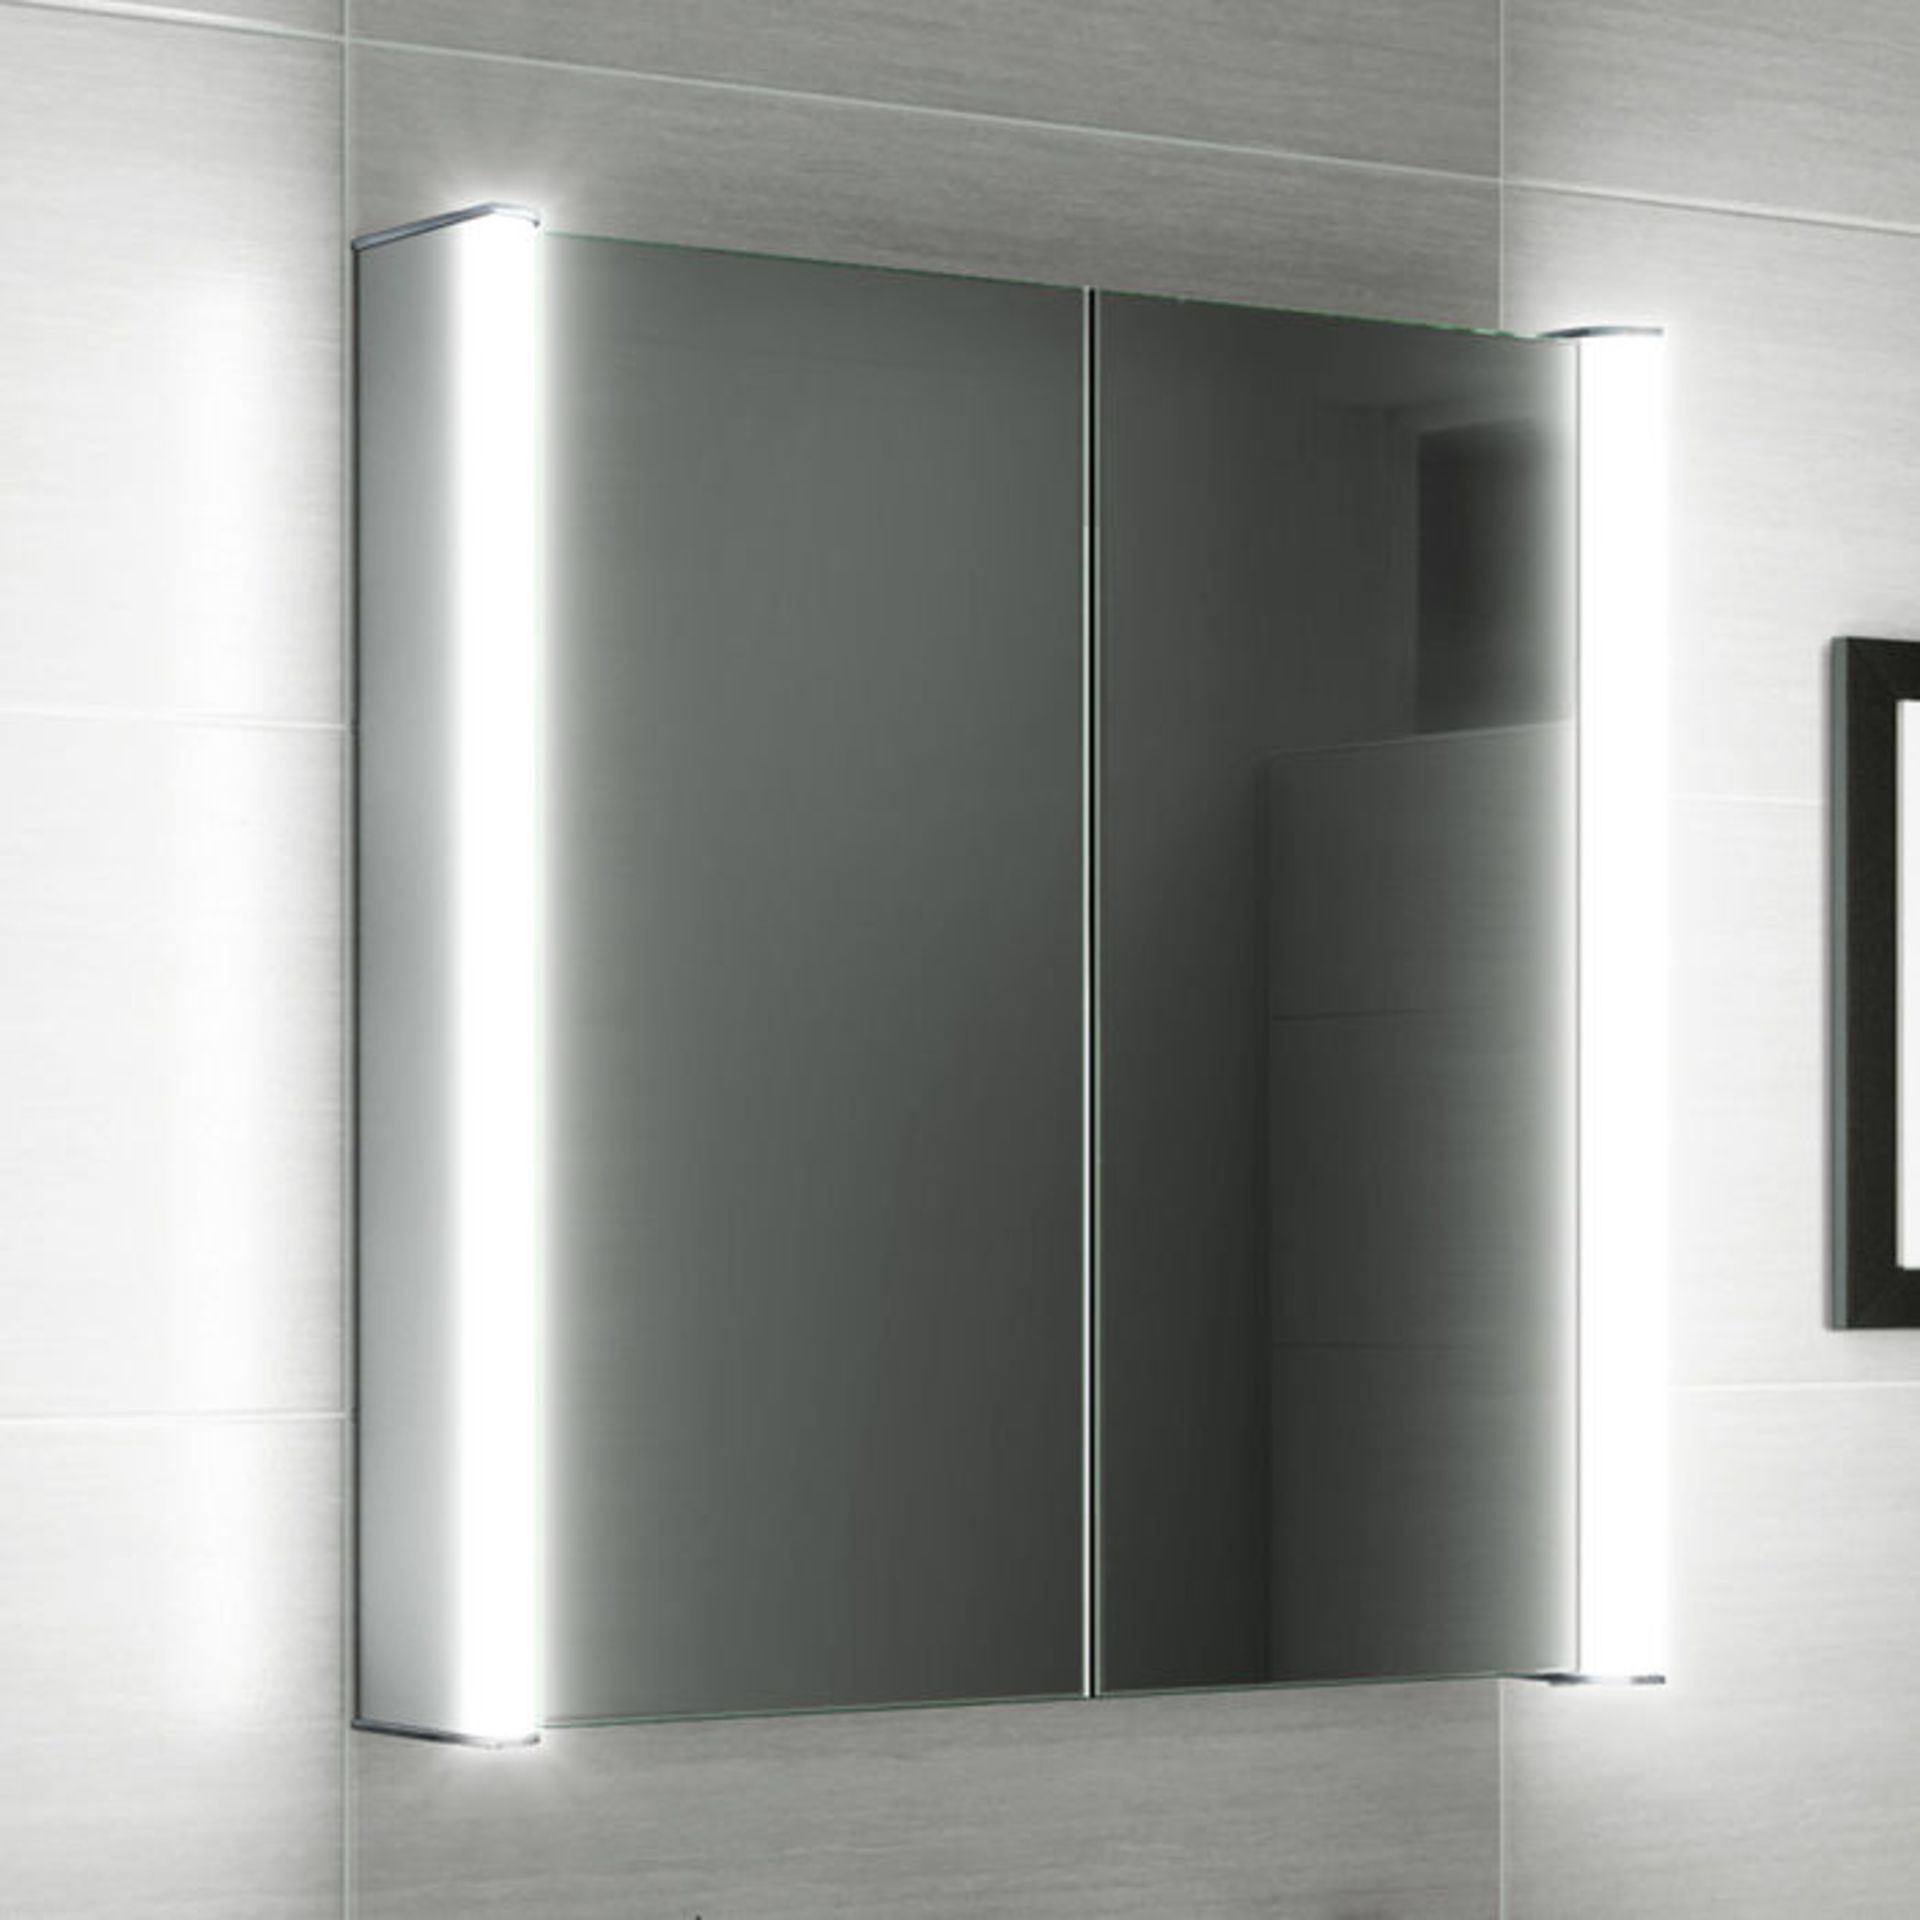 (O126) 600x650mm Luminaire Illuminated LED Mirror Cabinet - Bluetooth Speaker & Shaver Socket. - Image 2 of 5